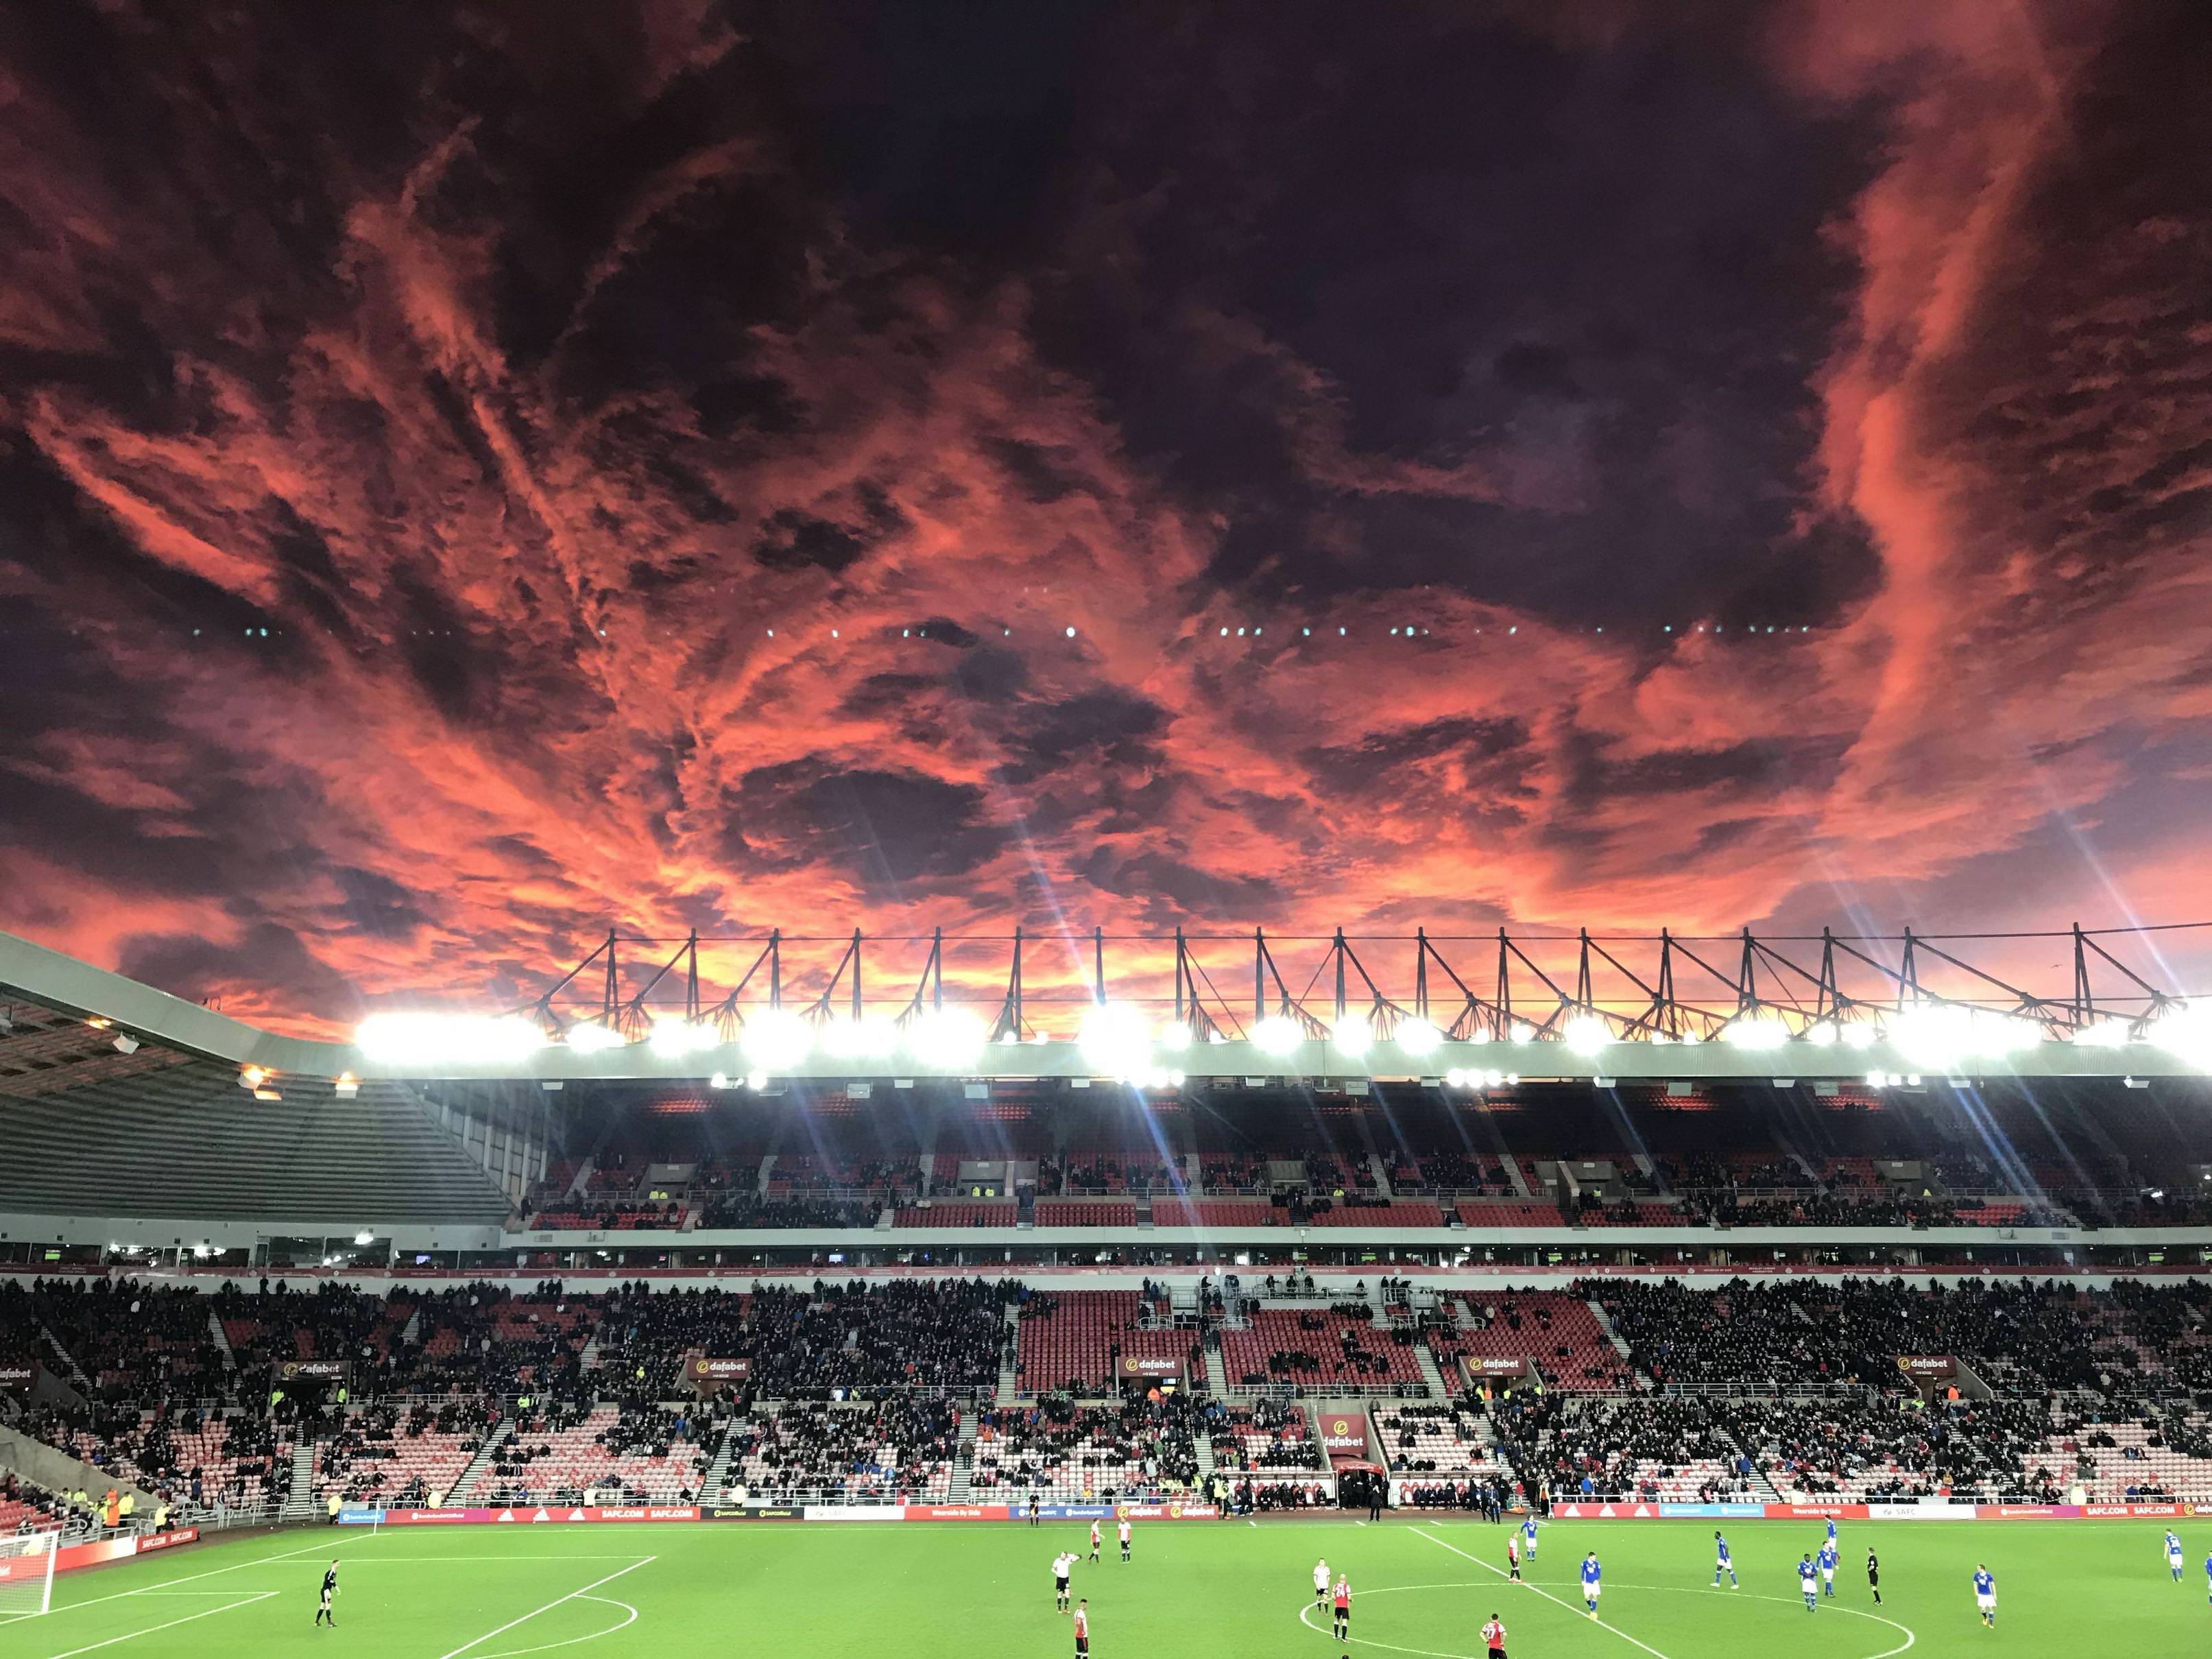 crazy sky over a soccer football statium